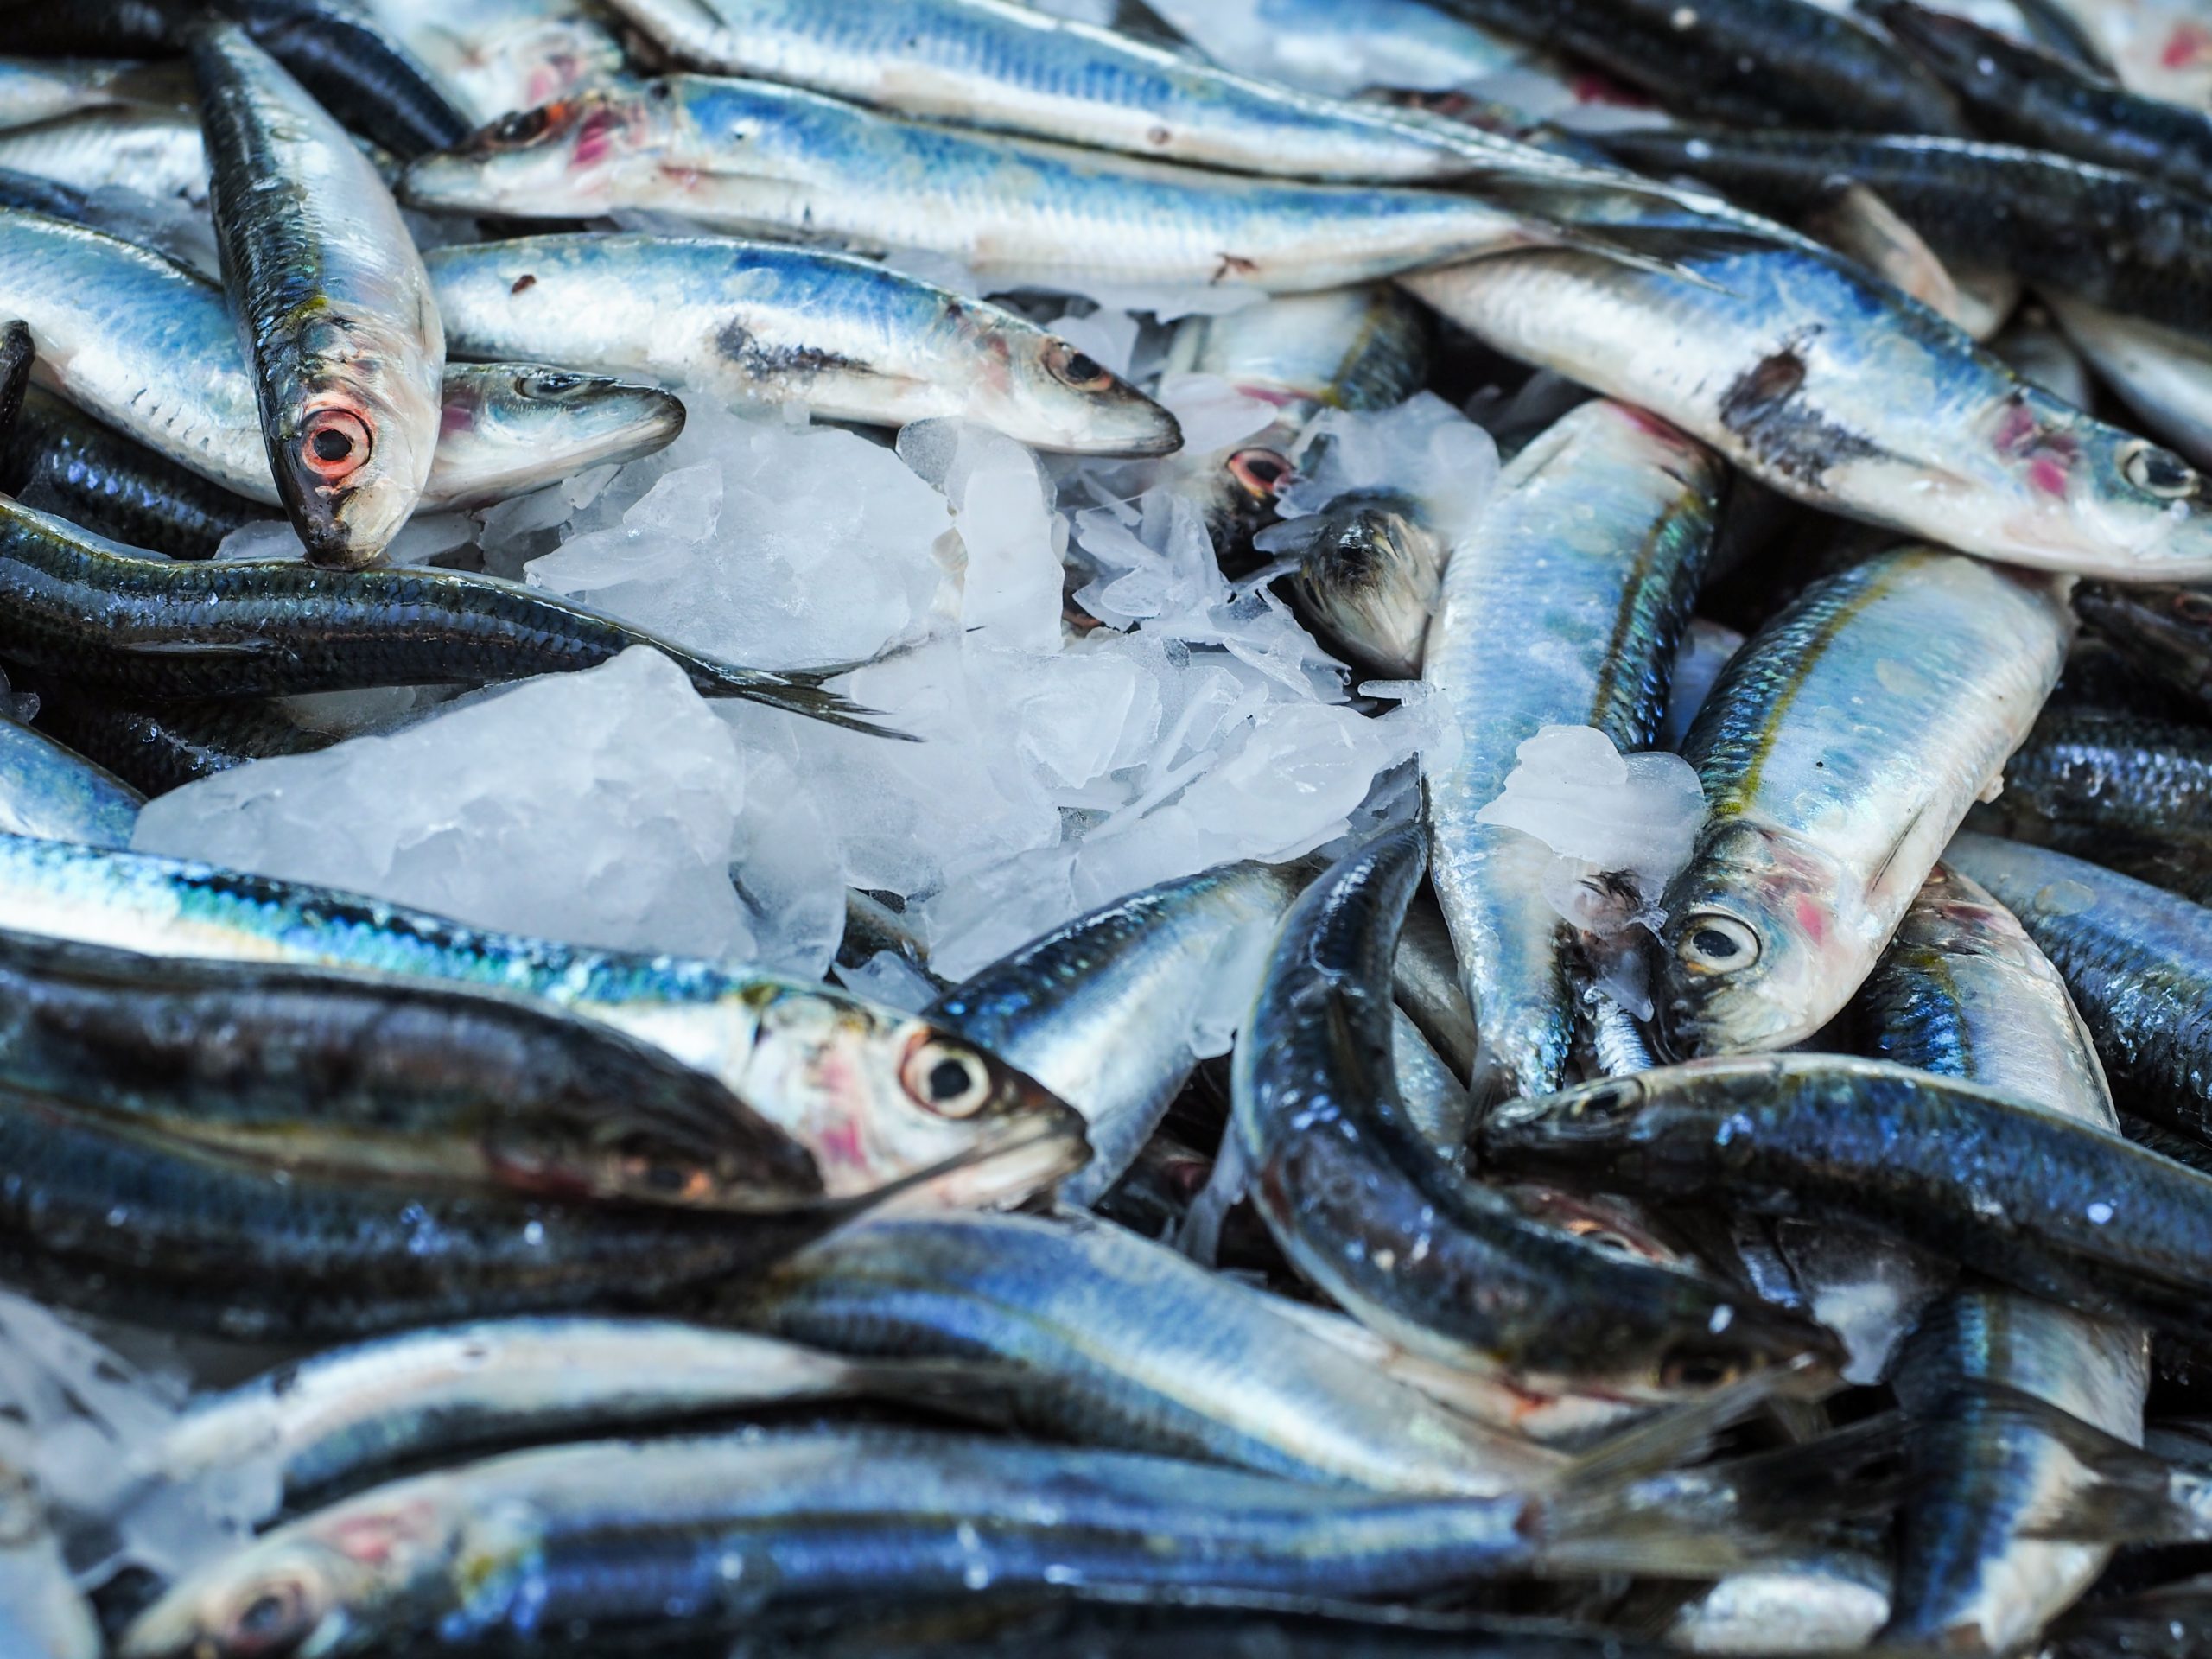 Continuem amb la identificació d’experiències per reduir el malbaratament de peix